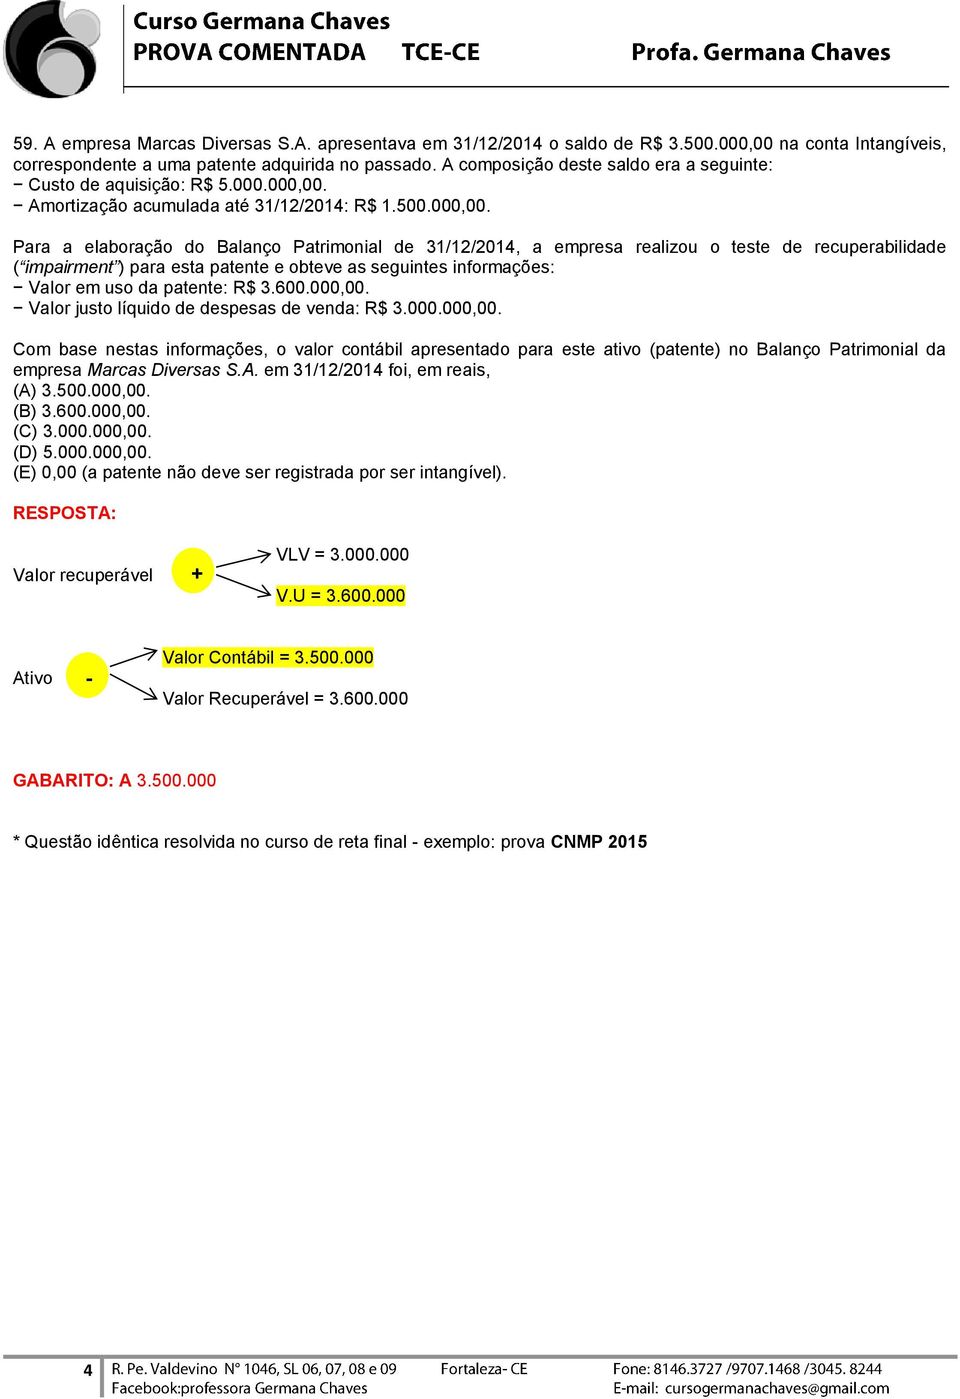 Amortização acumulada até 31/12/2014: R$ 1.500.000,00.